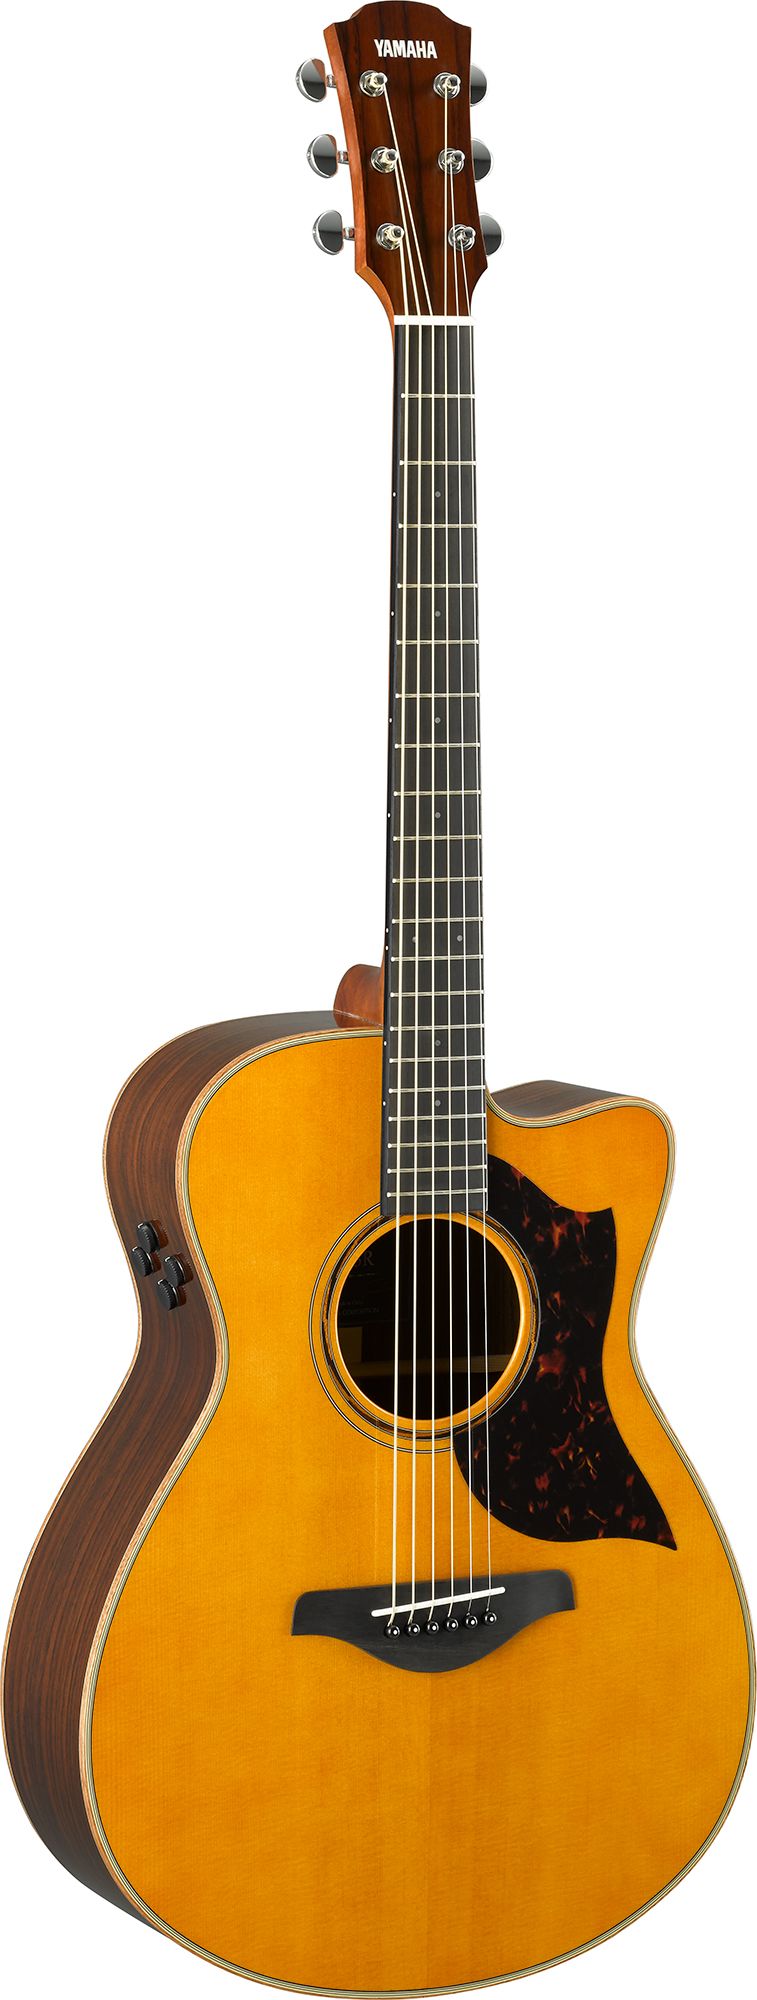 Đàn Guitar Acoustic Yamaha AC3R Vintage Natural (Hàng chính hãng)